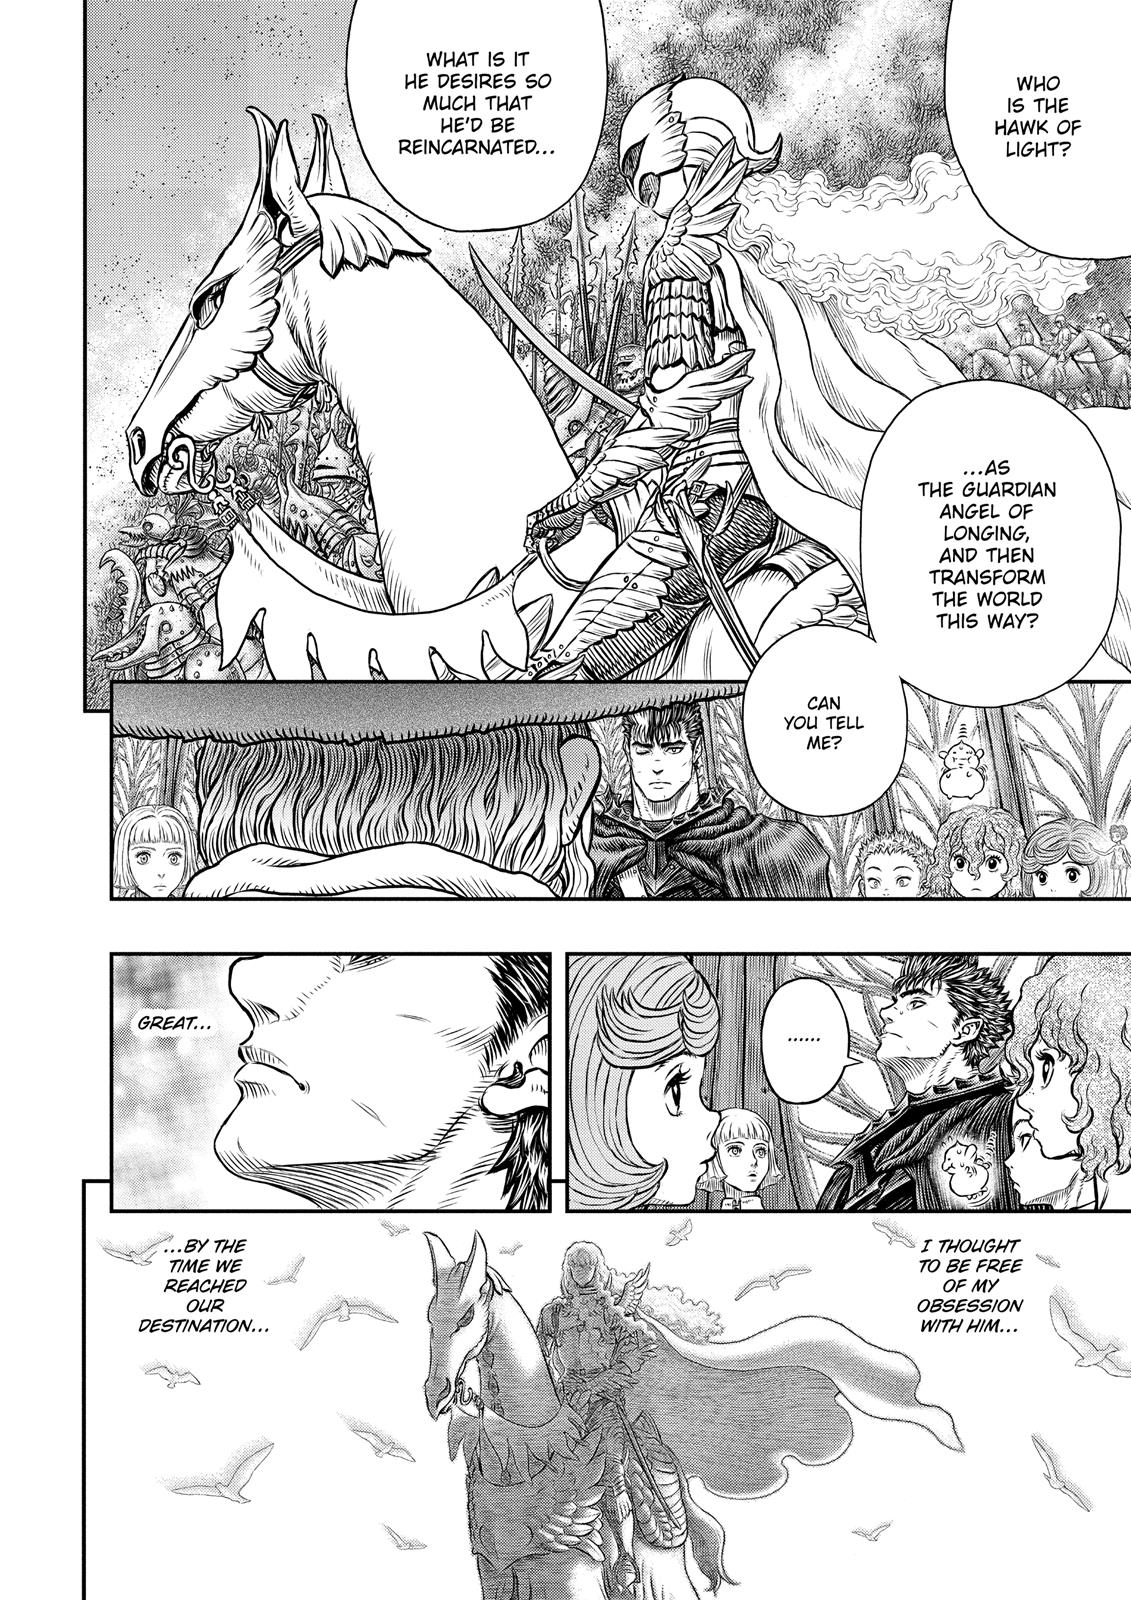 Berserk Manga Chapter 345 image 15